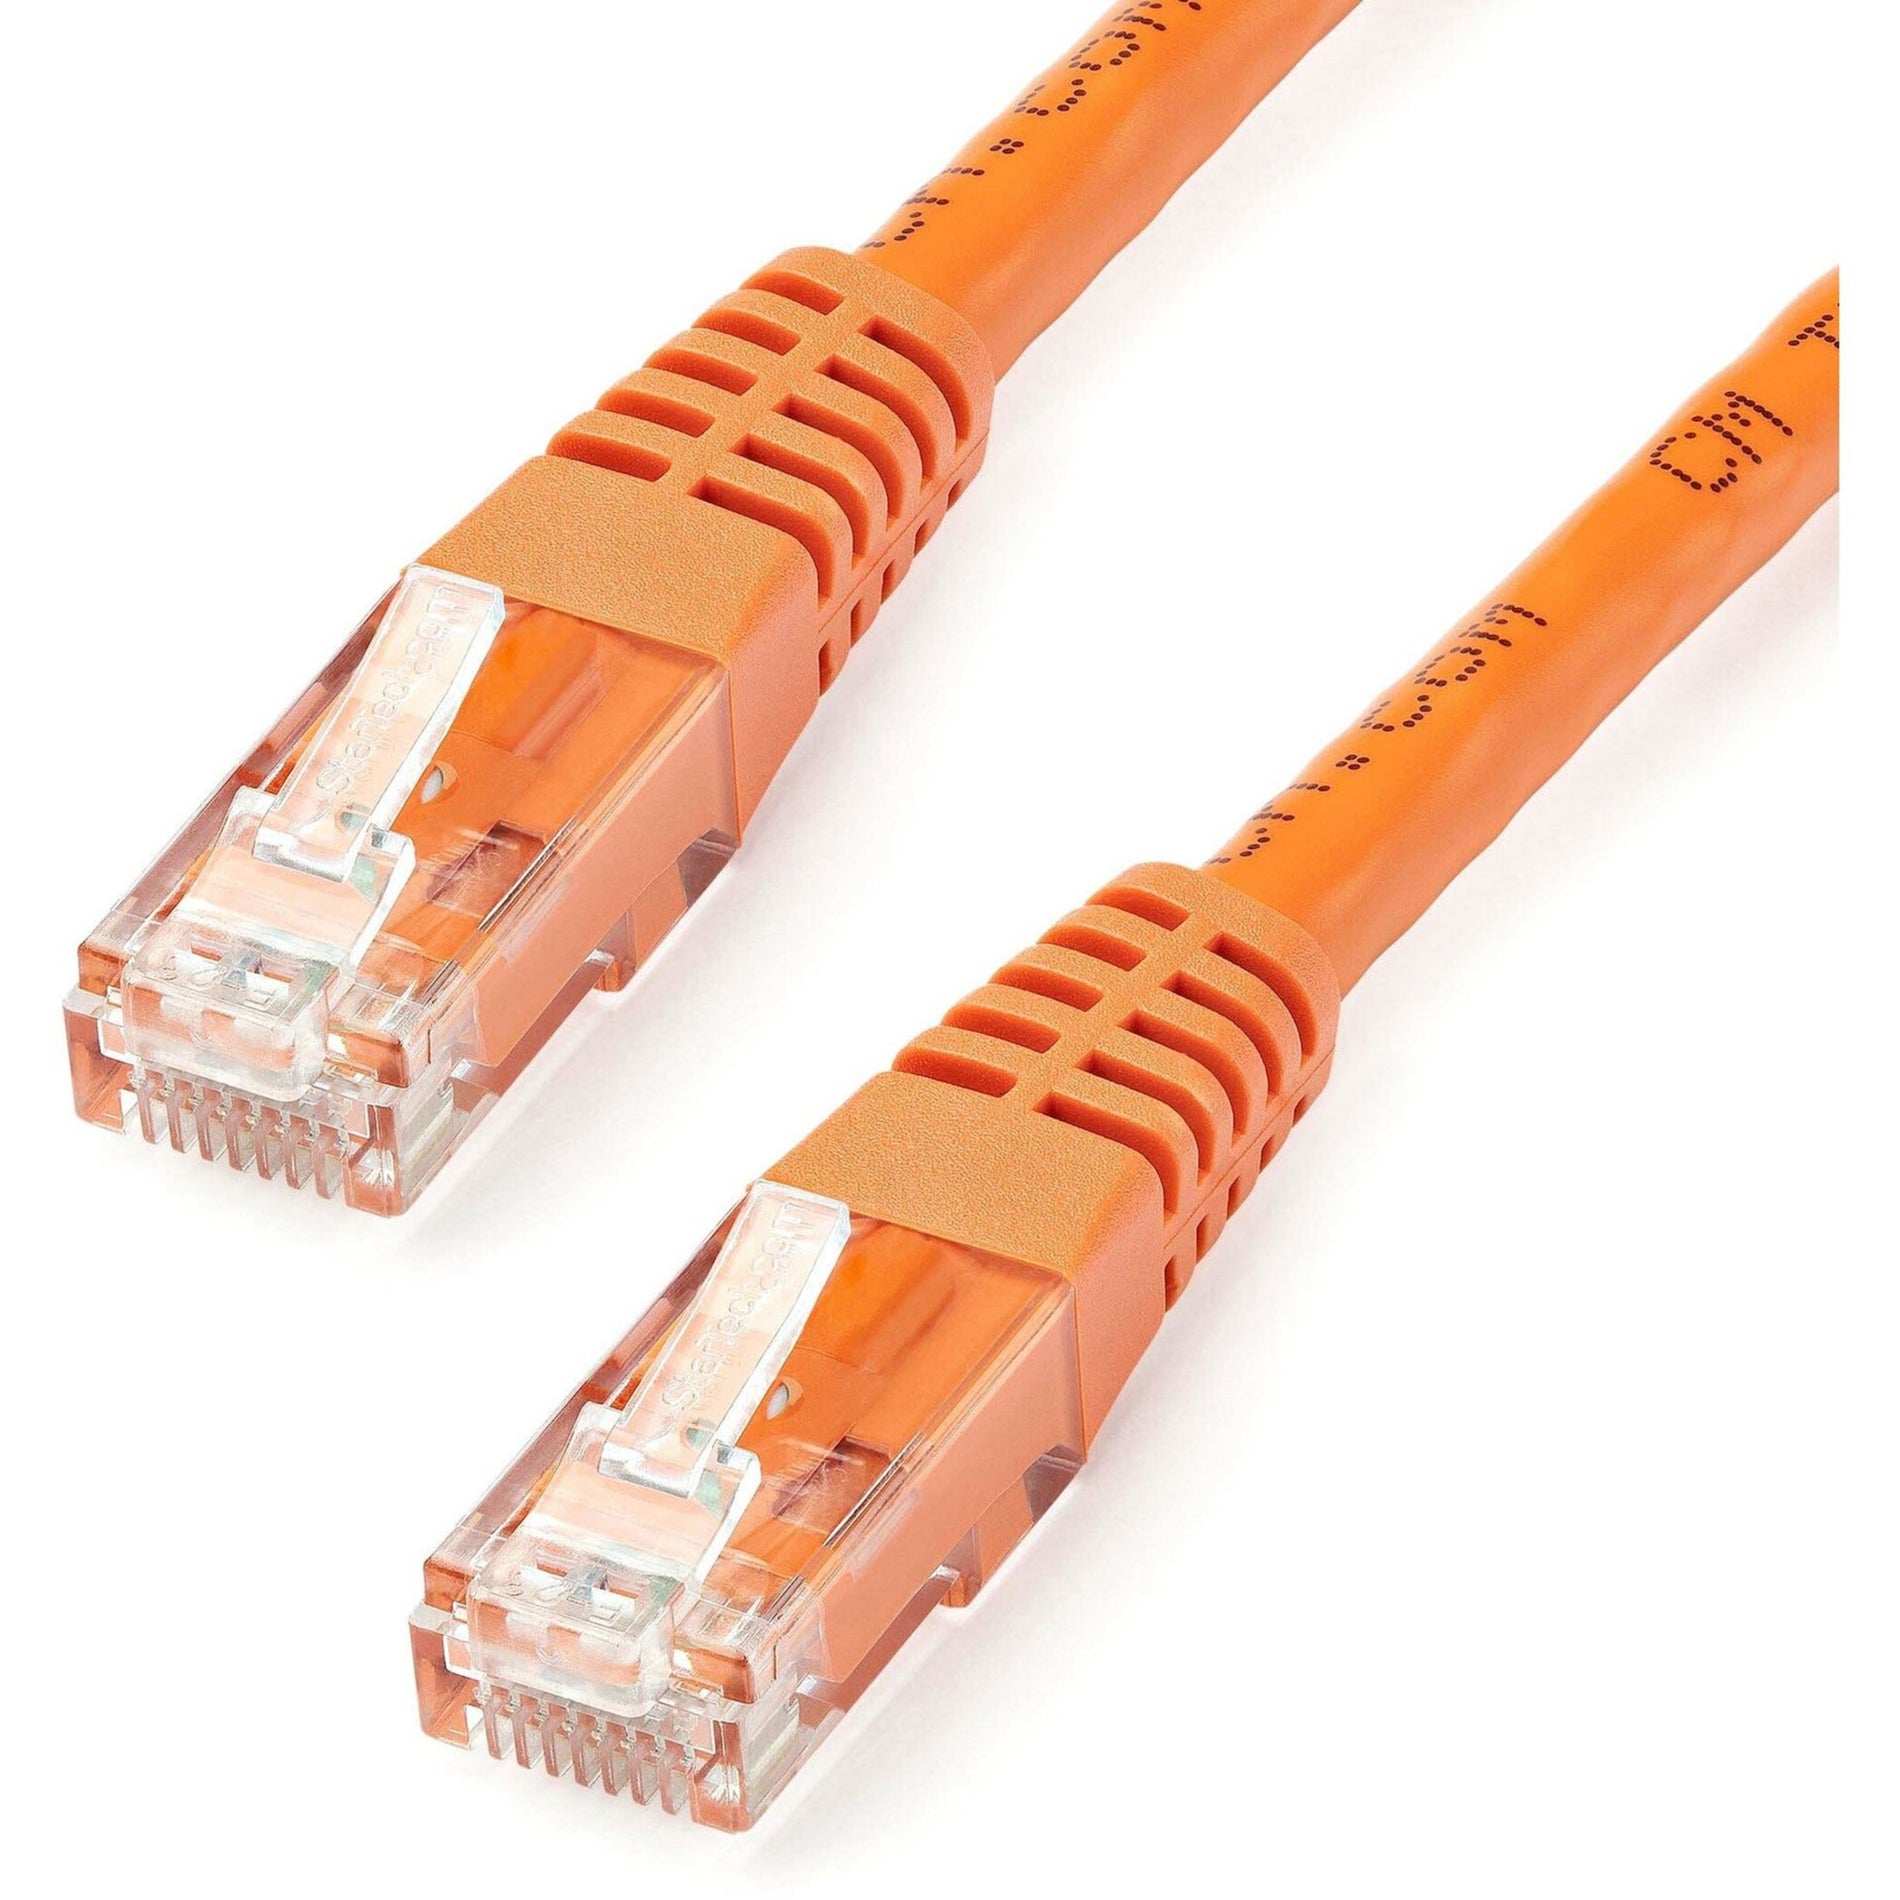 StarTech.com C6PATCH15OR 15ft Orange Cat6 UTP Patch Cable ETL Verified, Gigabit Ethernet Network Cord